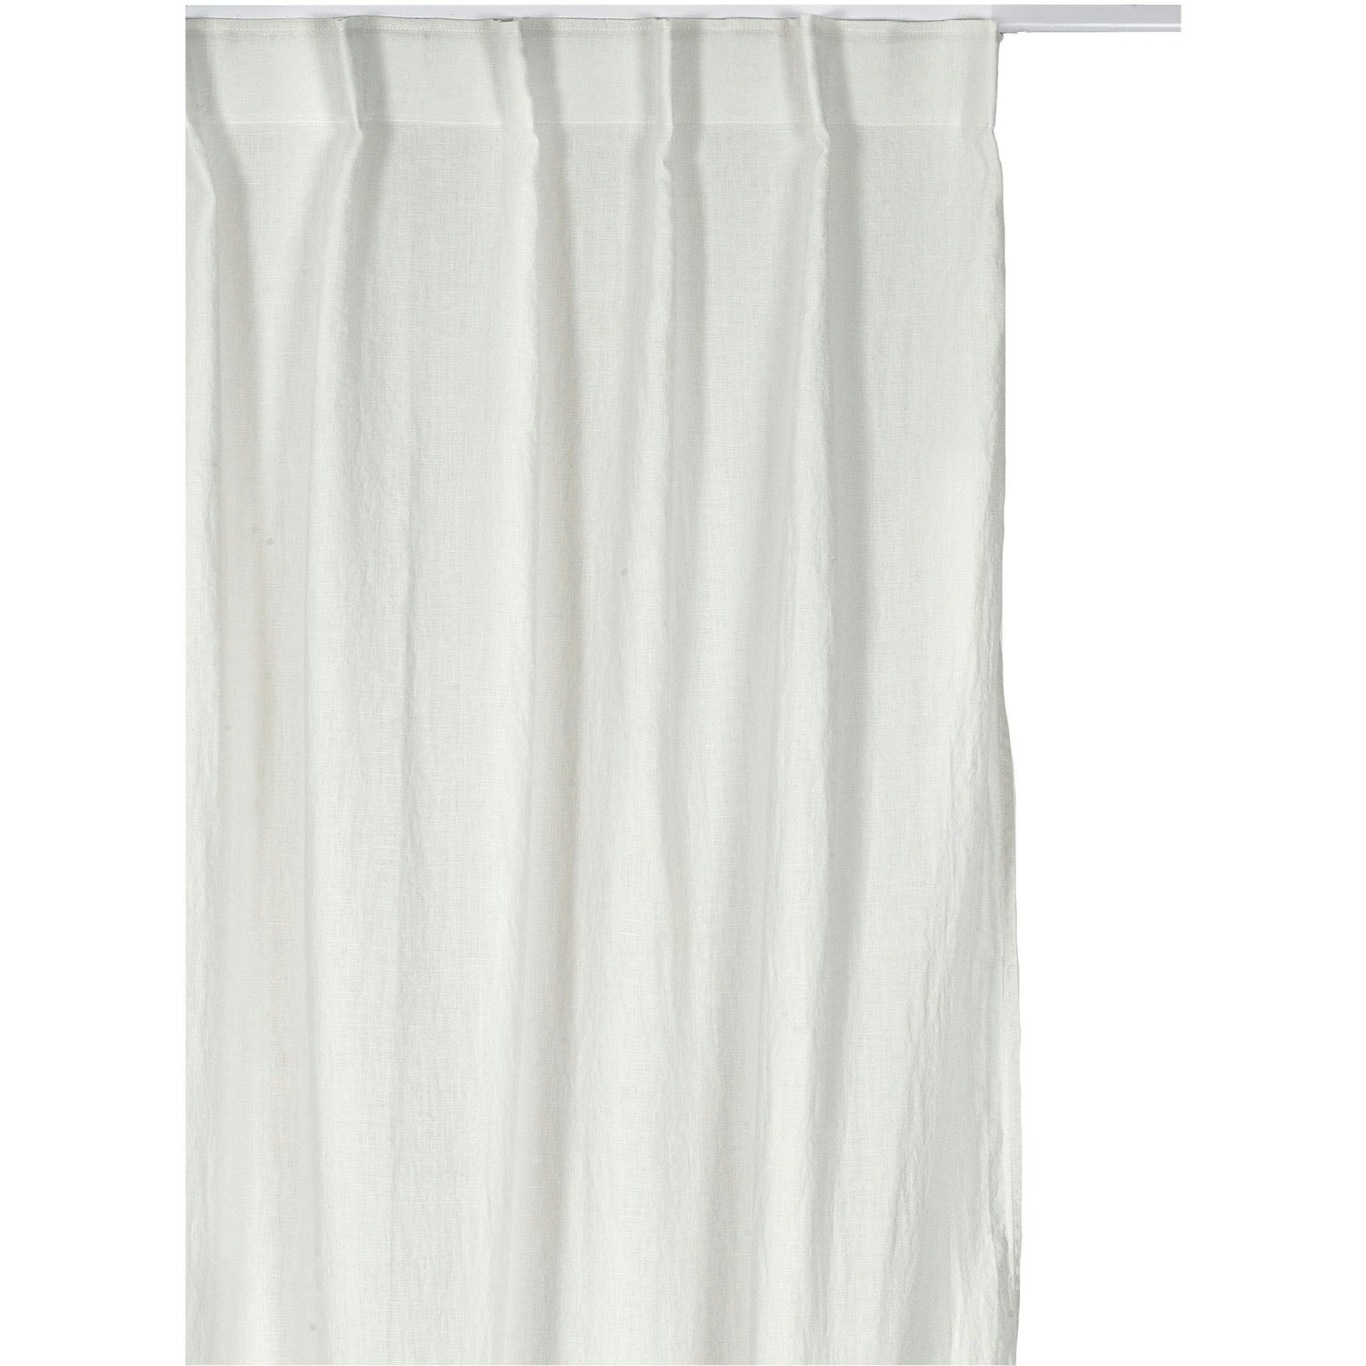 Sunrise Curtain With Pleat Band 280x290 cm, Fog